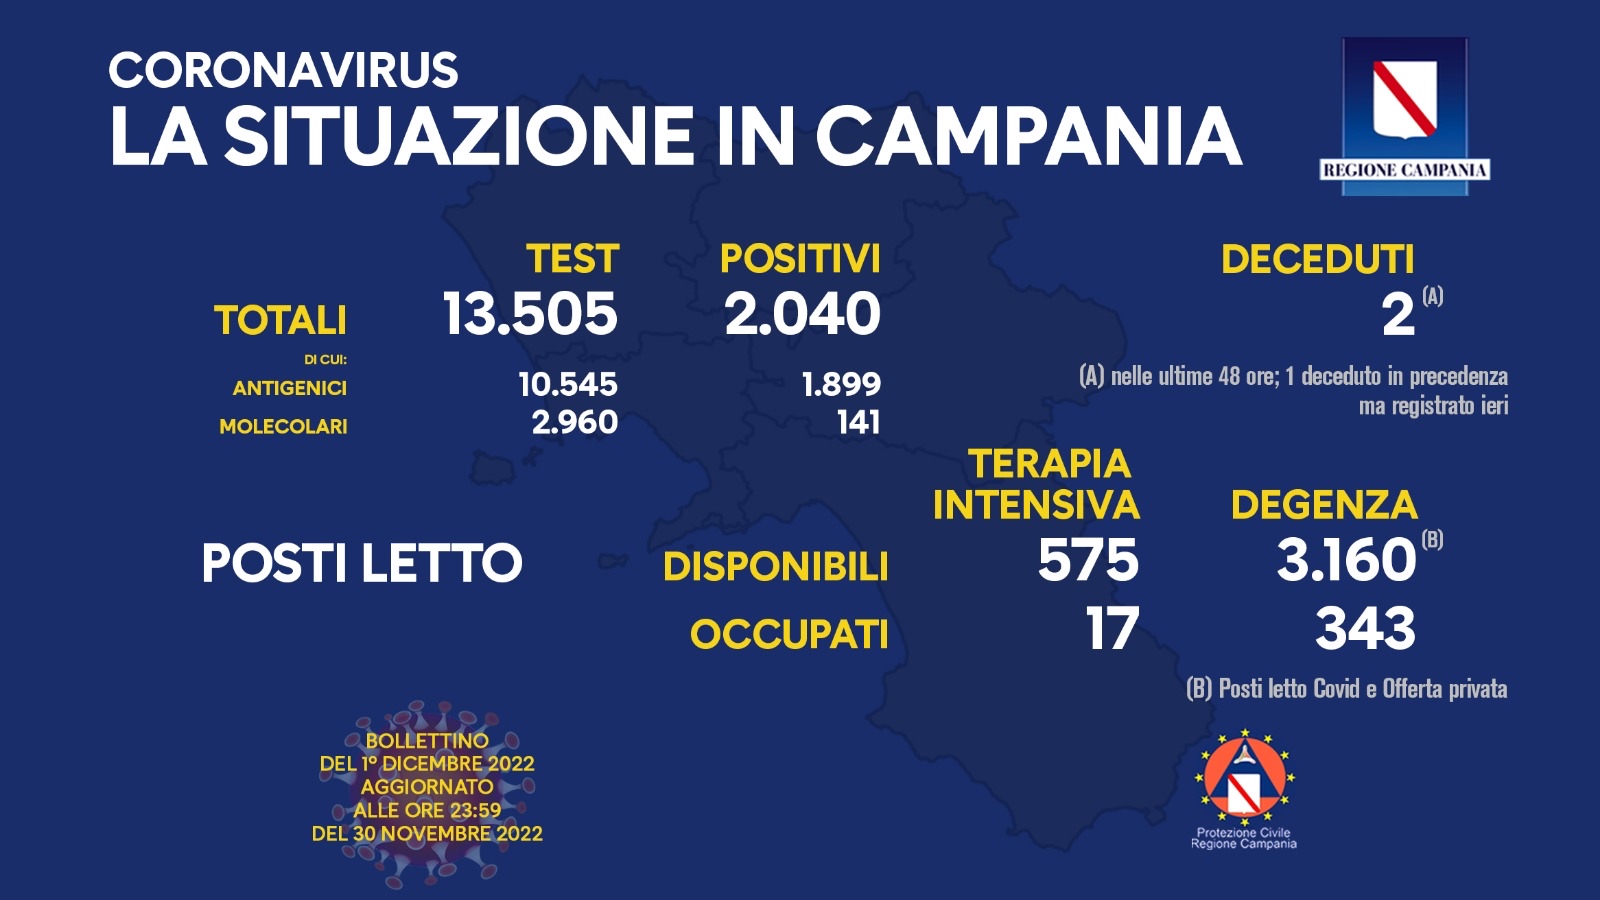 Regione Campania: Coronavirus, Unità di Crisi, Bollettino, 2.040 casi positivi, 2 decessi